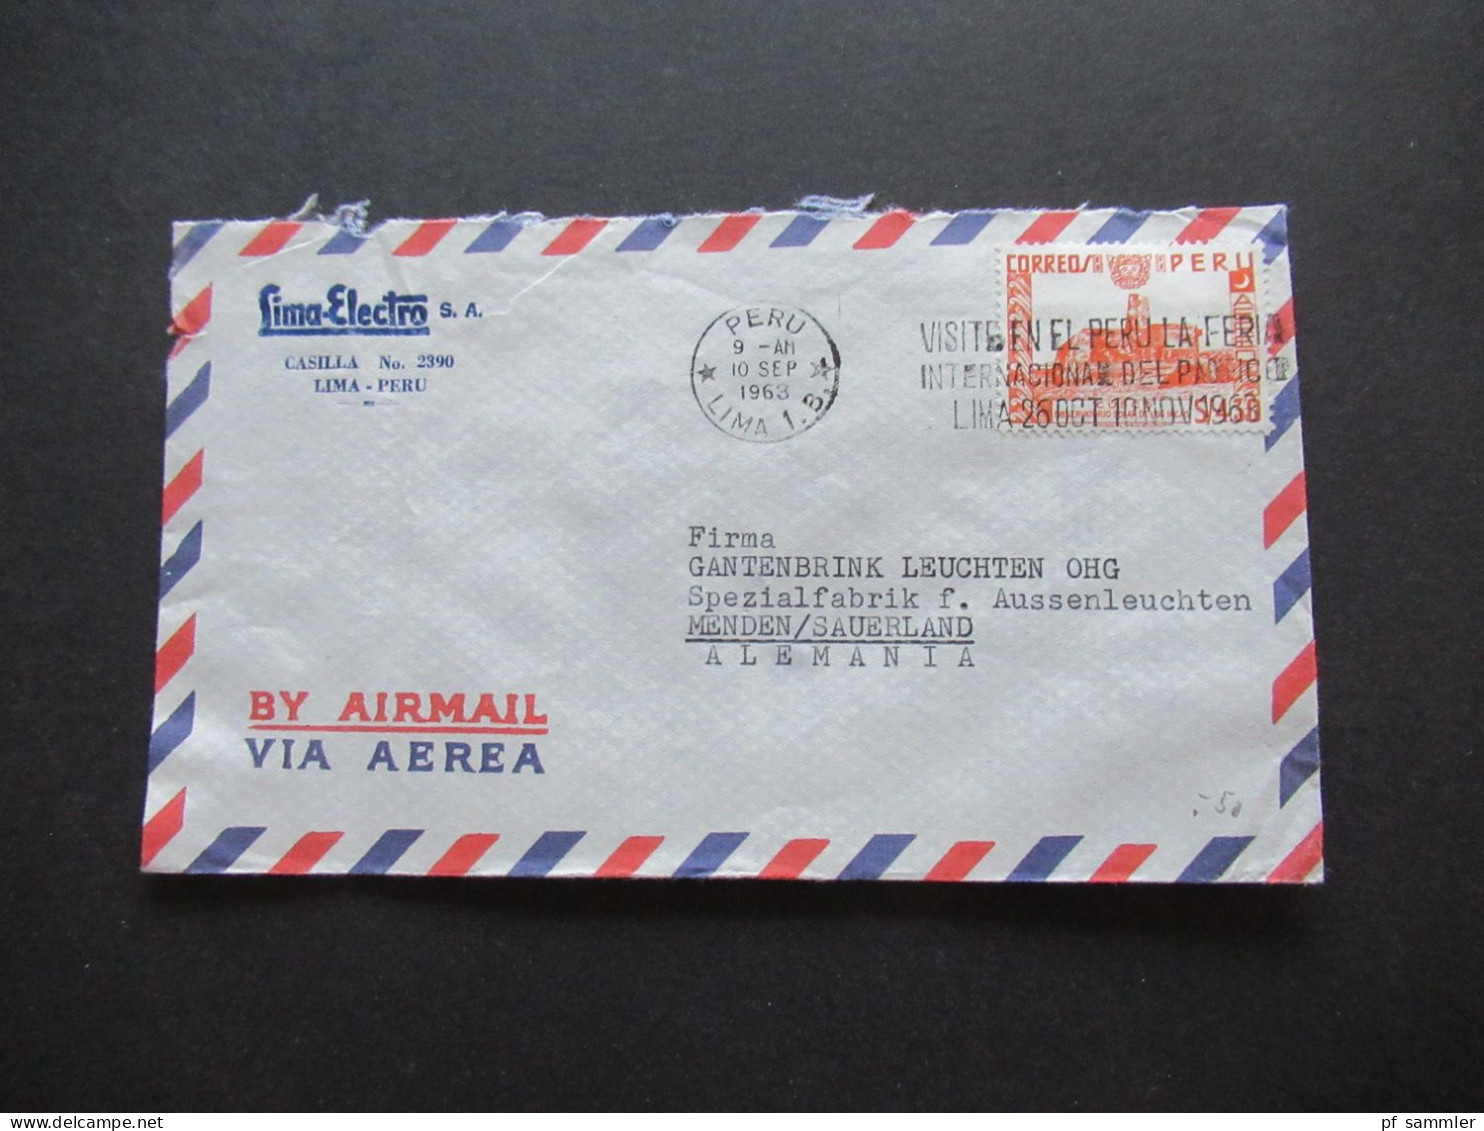 Südamerika Peru By Air Mail Luftpost 1963 Firmenumschlag Lima Electro S.A. Lima Peru 6x Auslandsbrief nach Menden